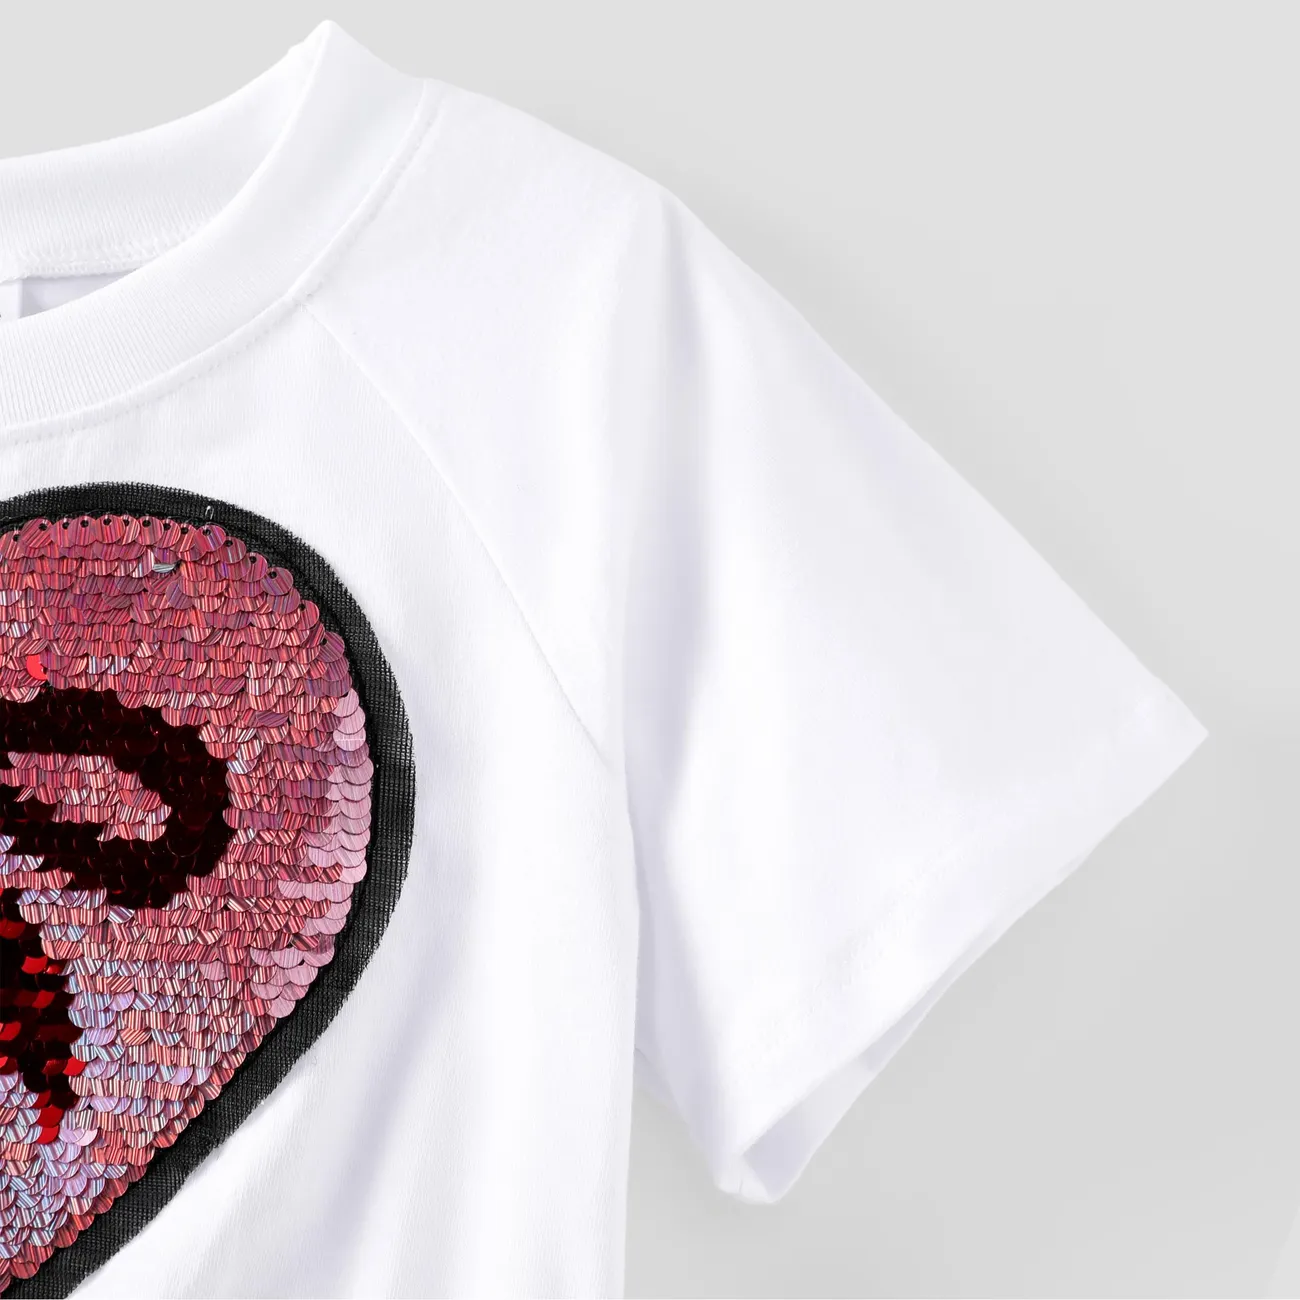 Niño pequeño / niña 2pcs Camiseta corta bordada de lentejuelas de corazón y juego de falda de cinta pinkywhite big image 1